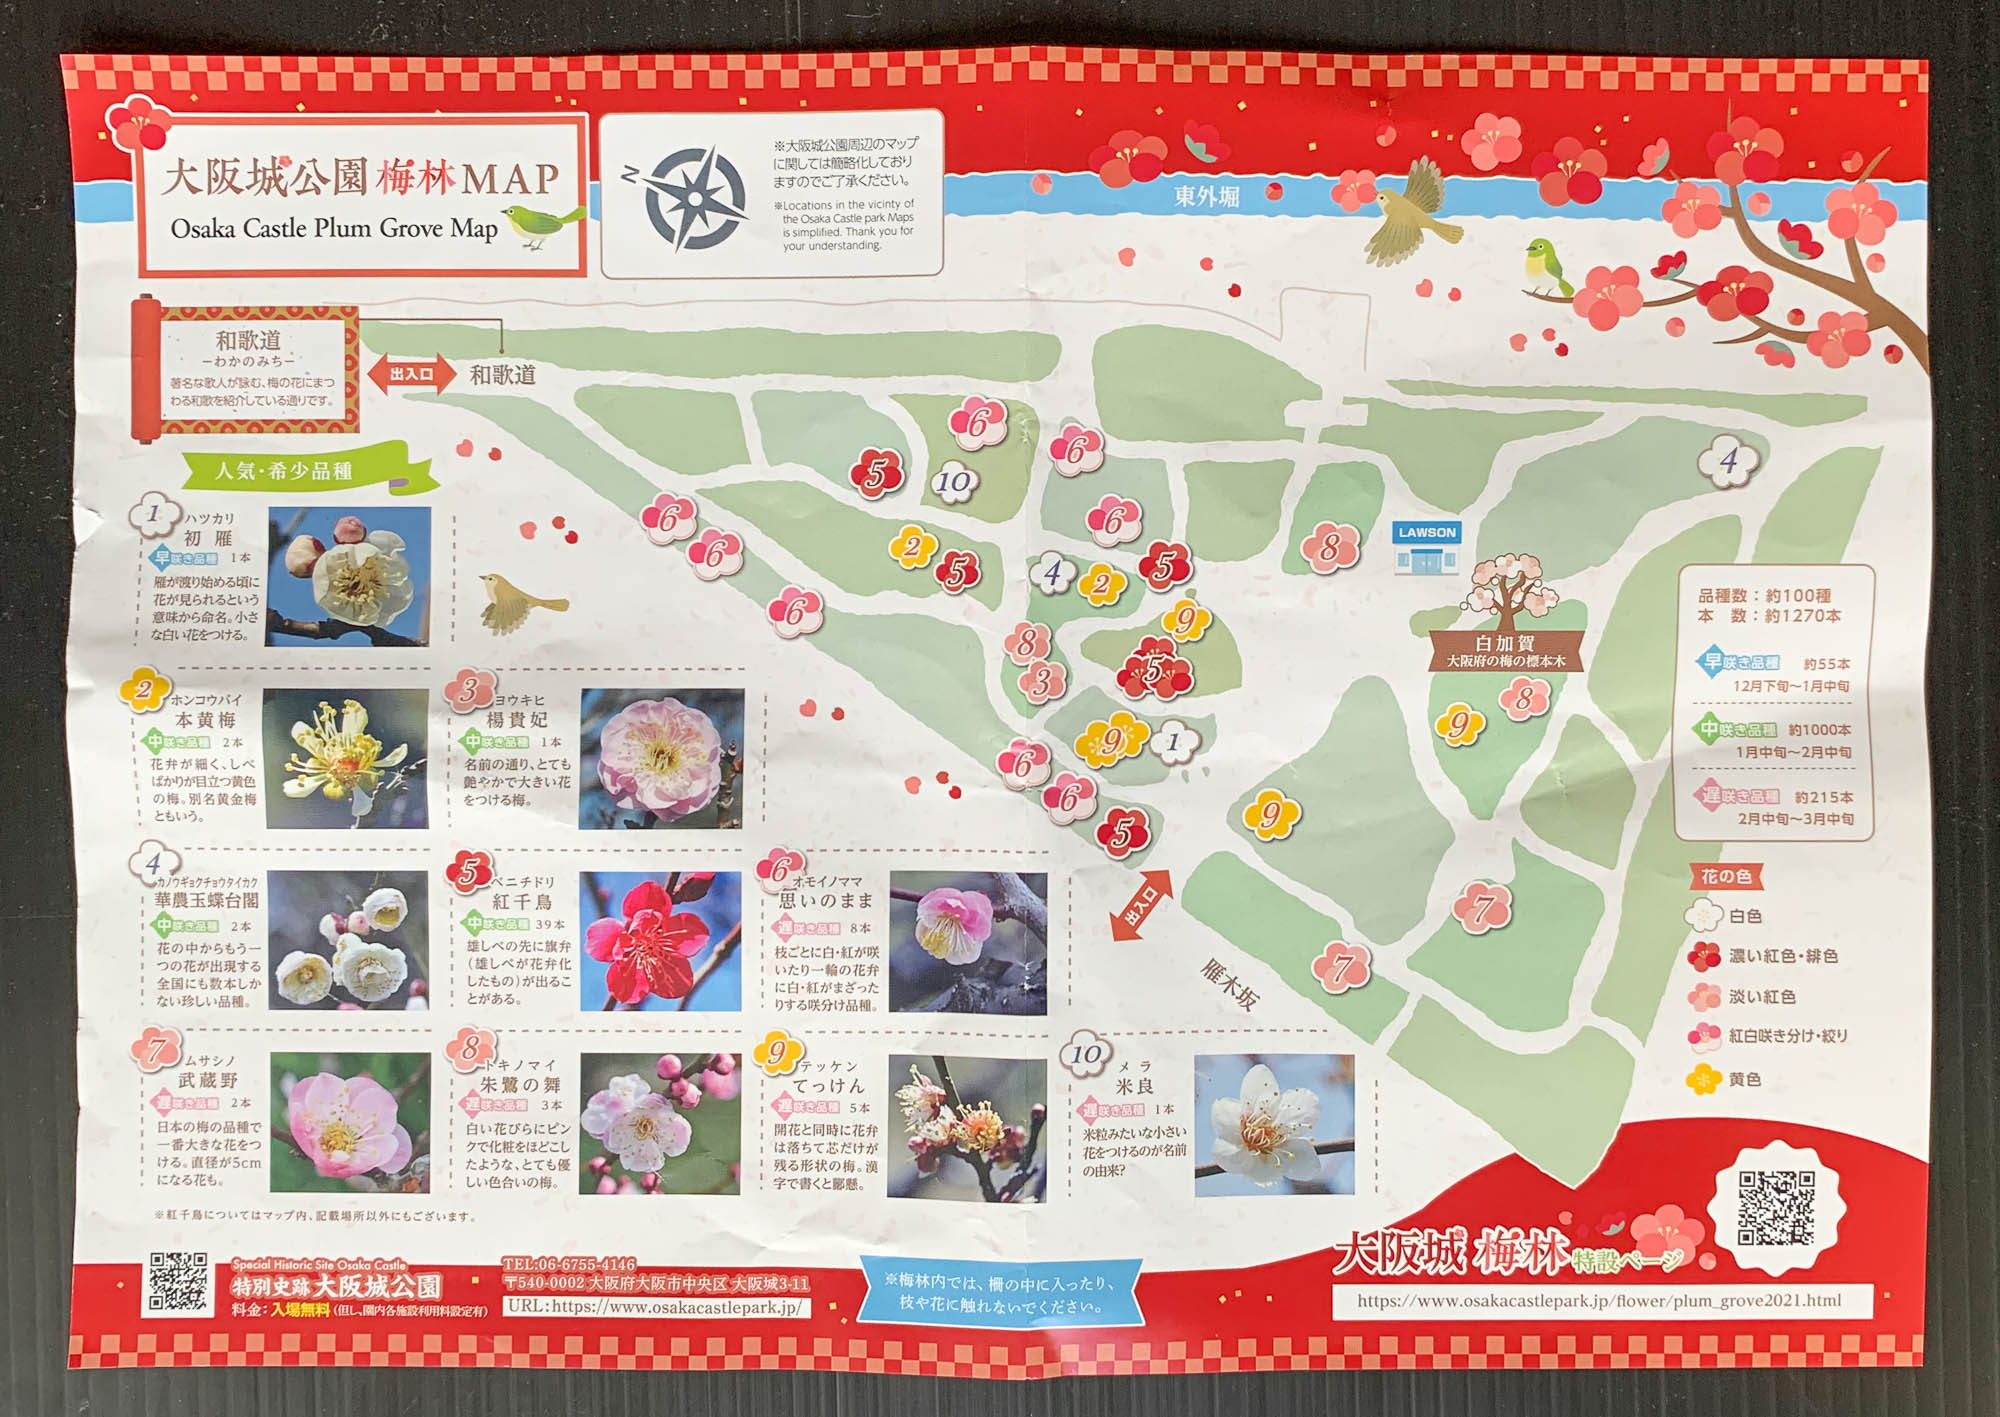 大阪城公園 梅林 22年の開花情報 見ごろとアクセス方法について